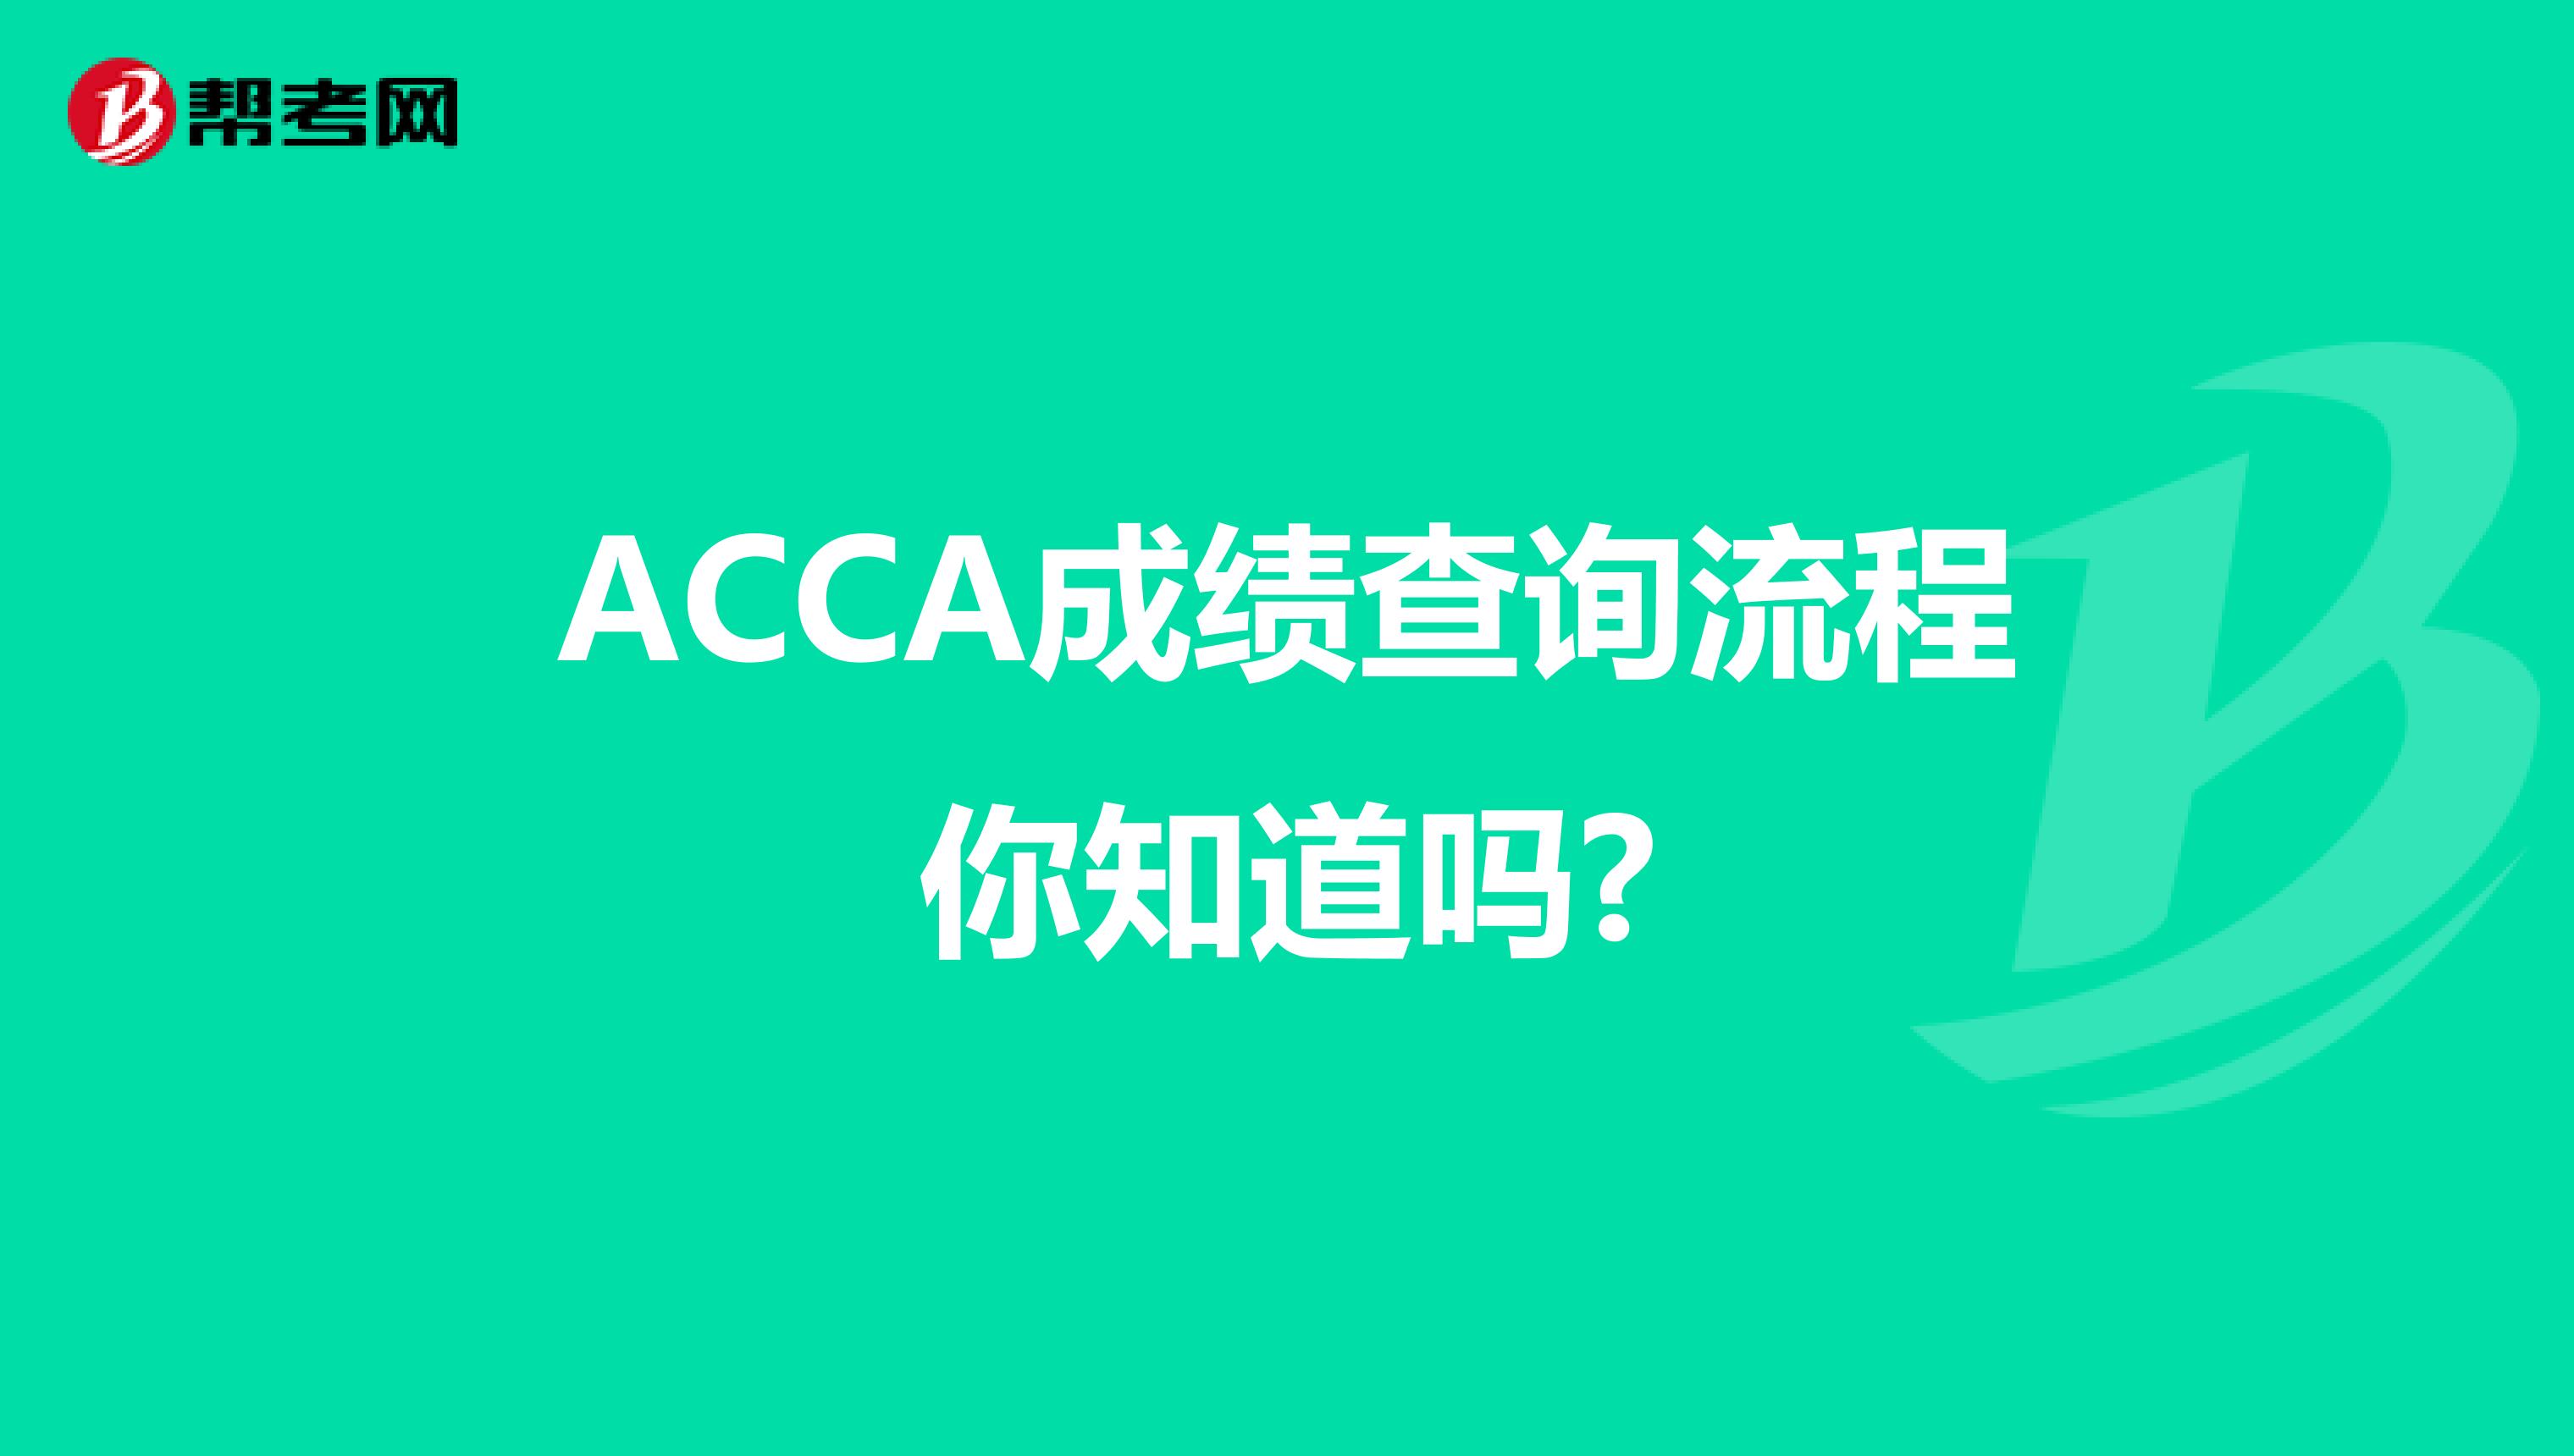 ACCA成绩查询流程你知道吗?